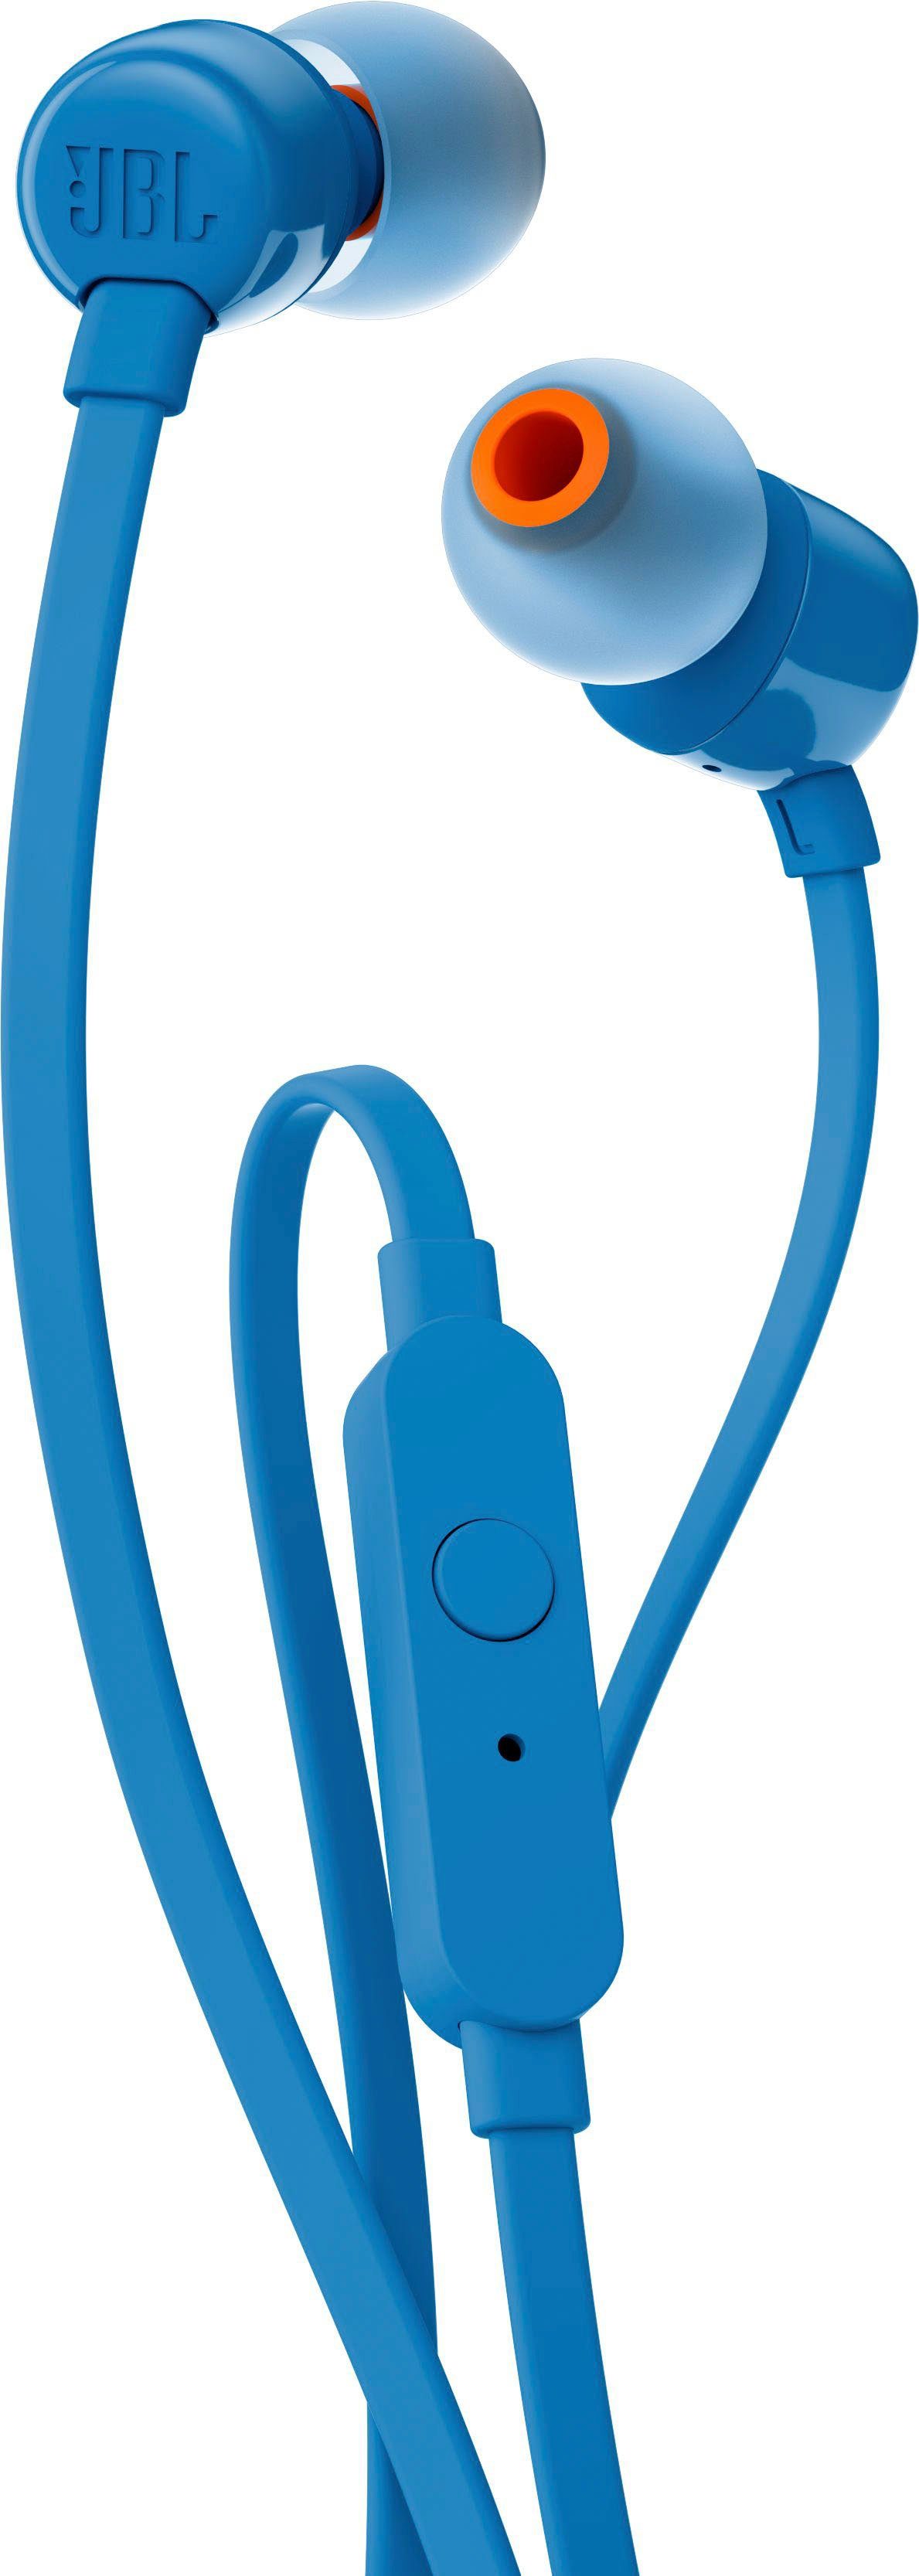 JBL blau T110 In-Ear-Kopfhörer